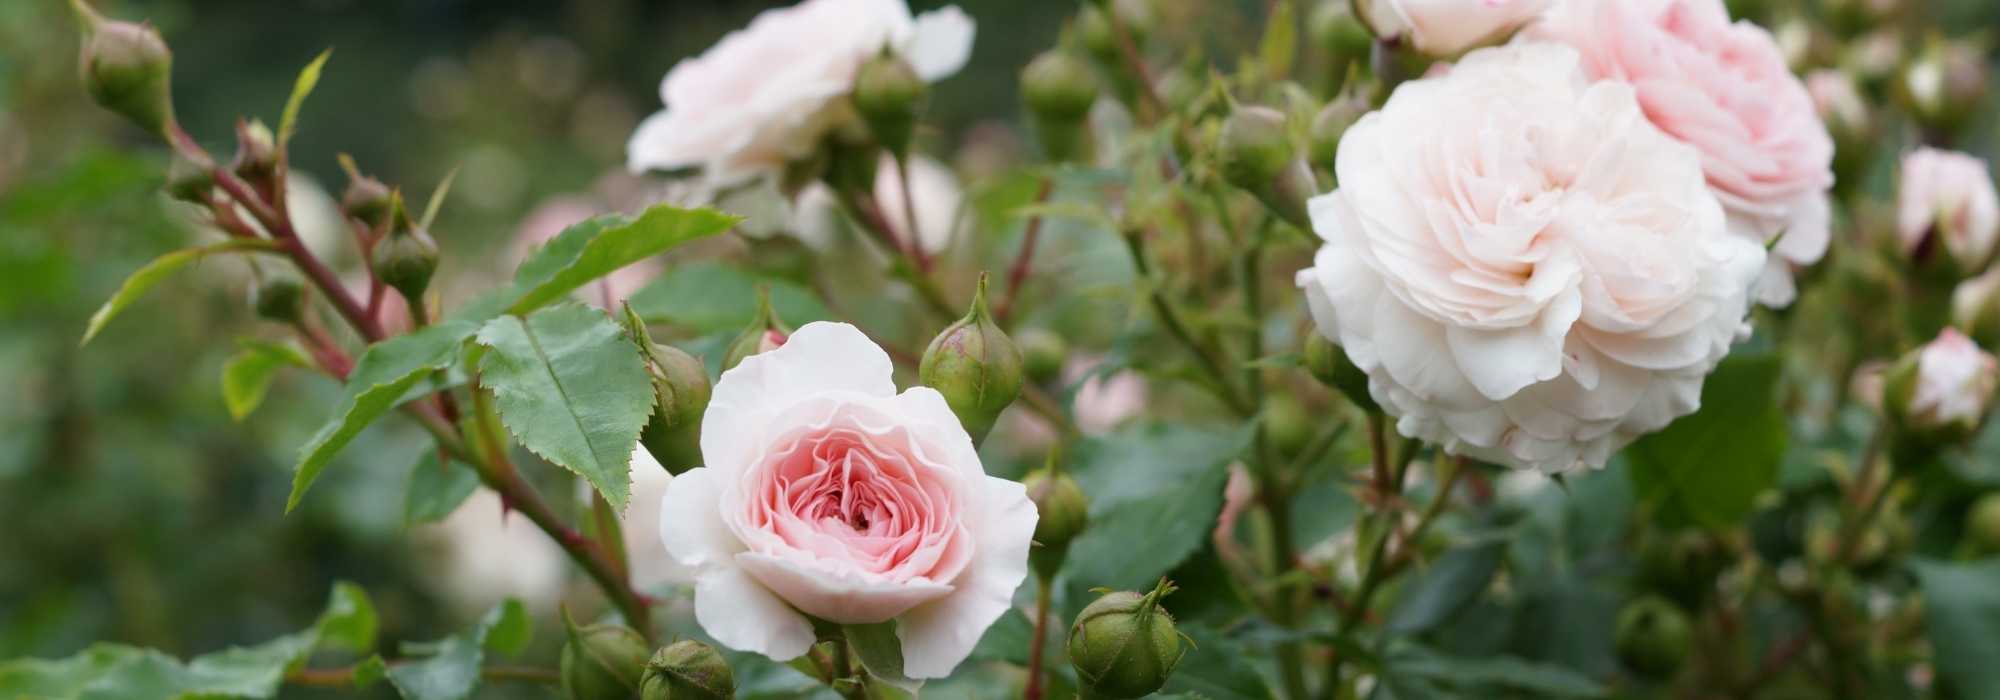 Plante de rose,arbuste vivace fleur ornementale,rosiers a planter